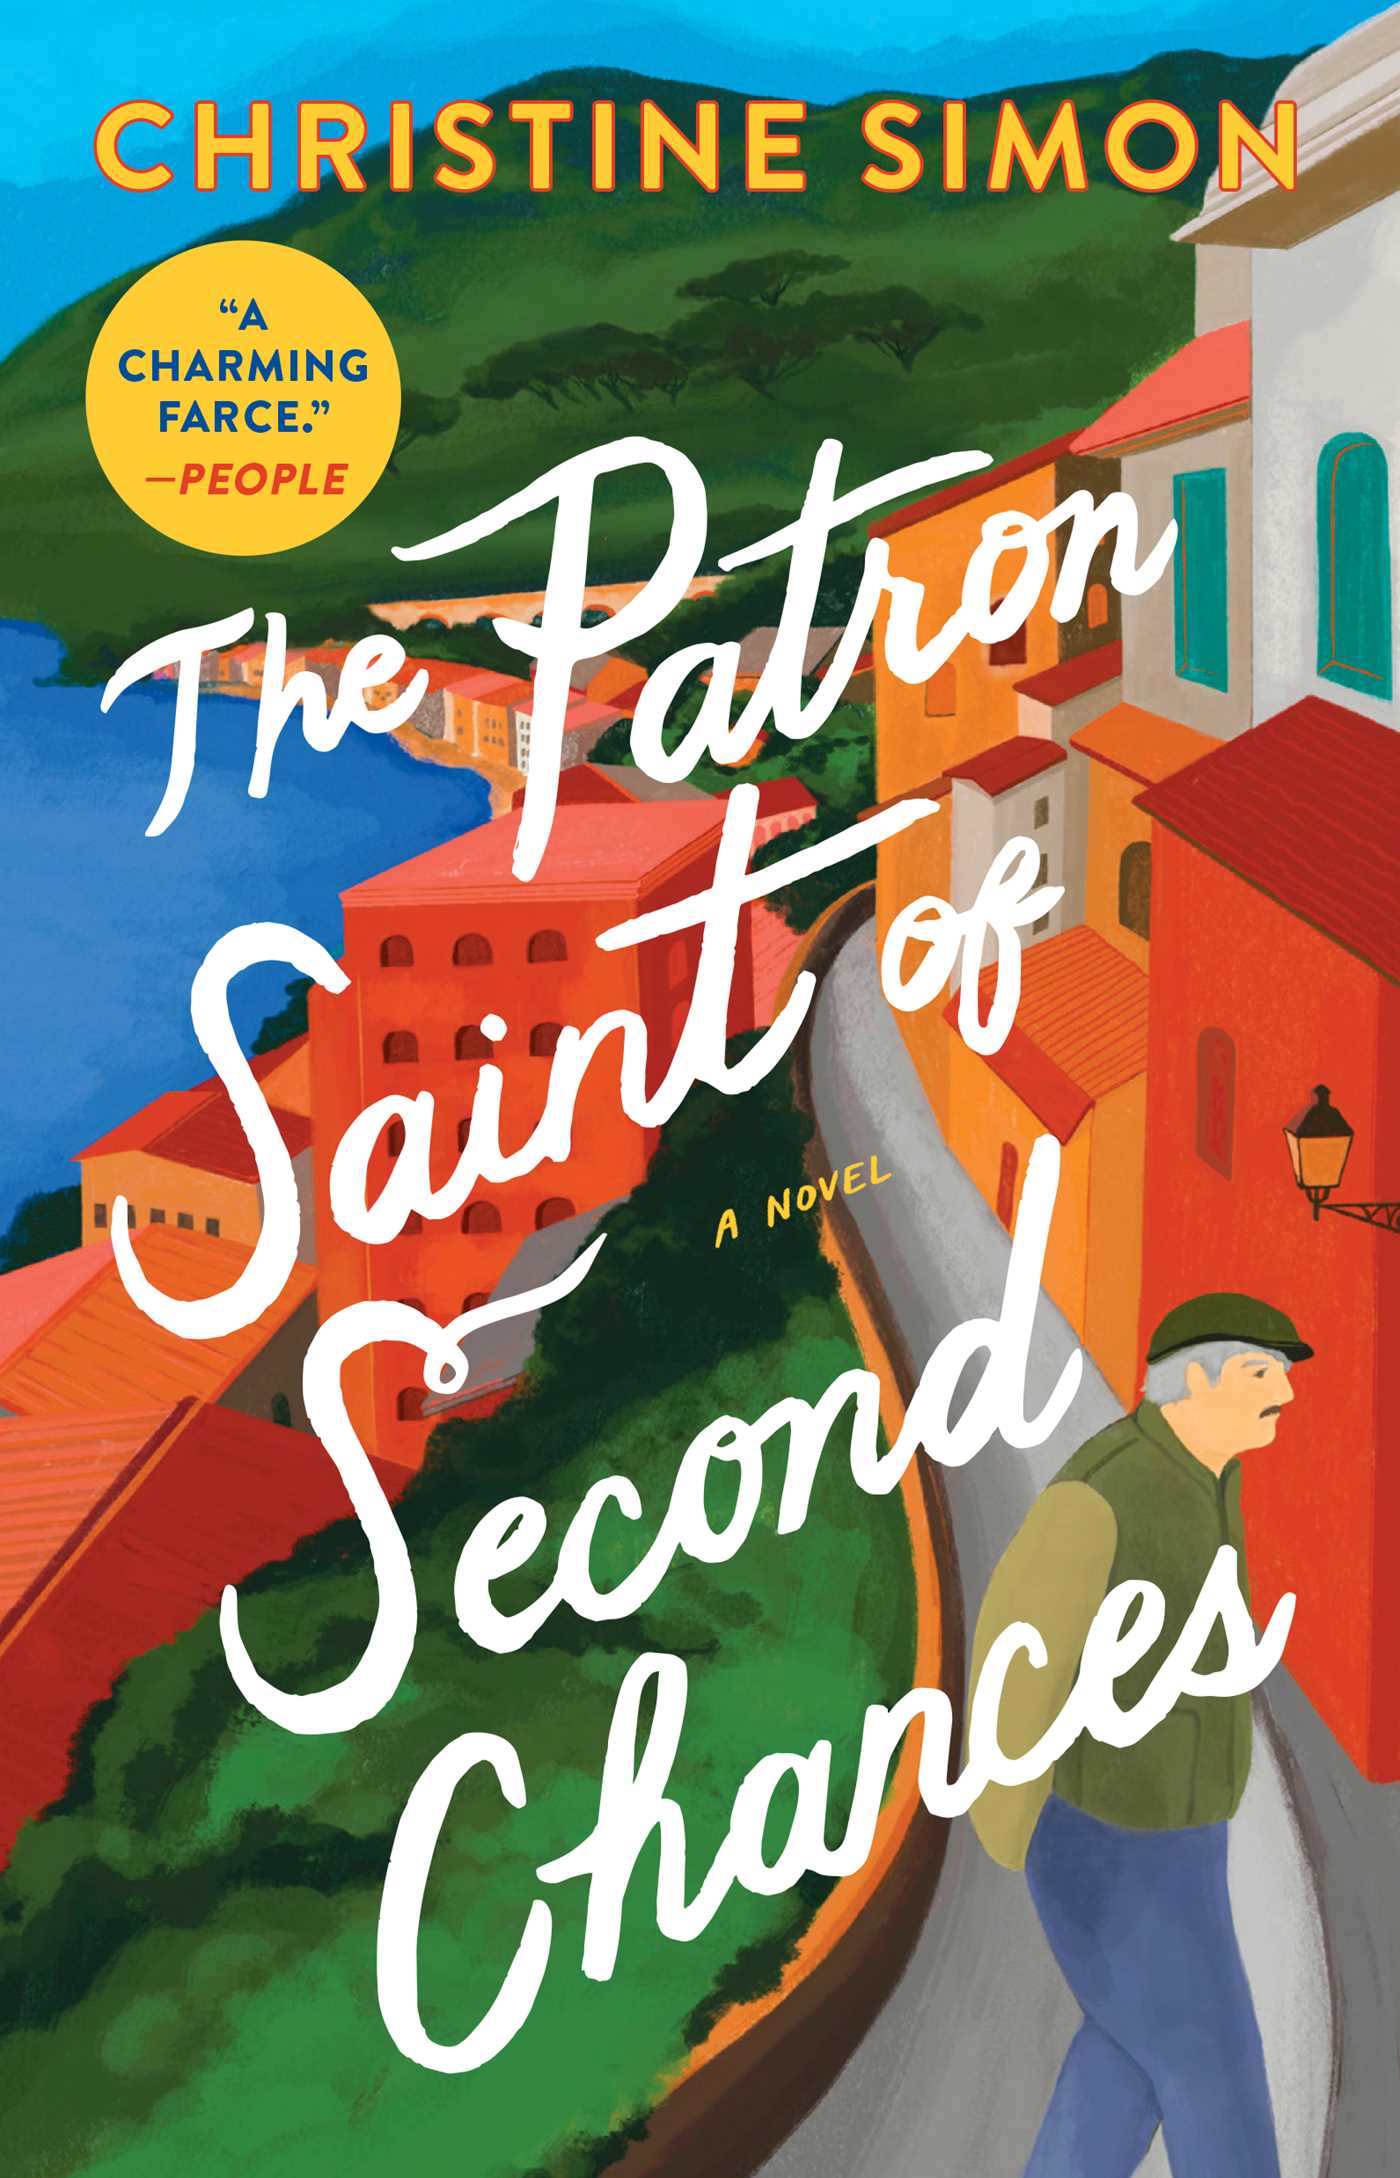 The Patron Saint of Second Chances